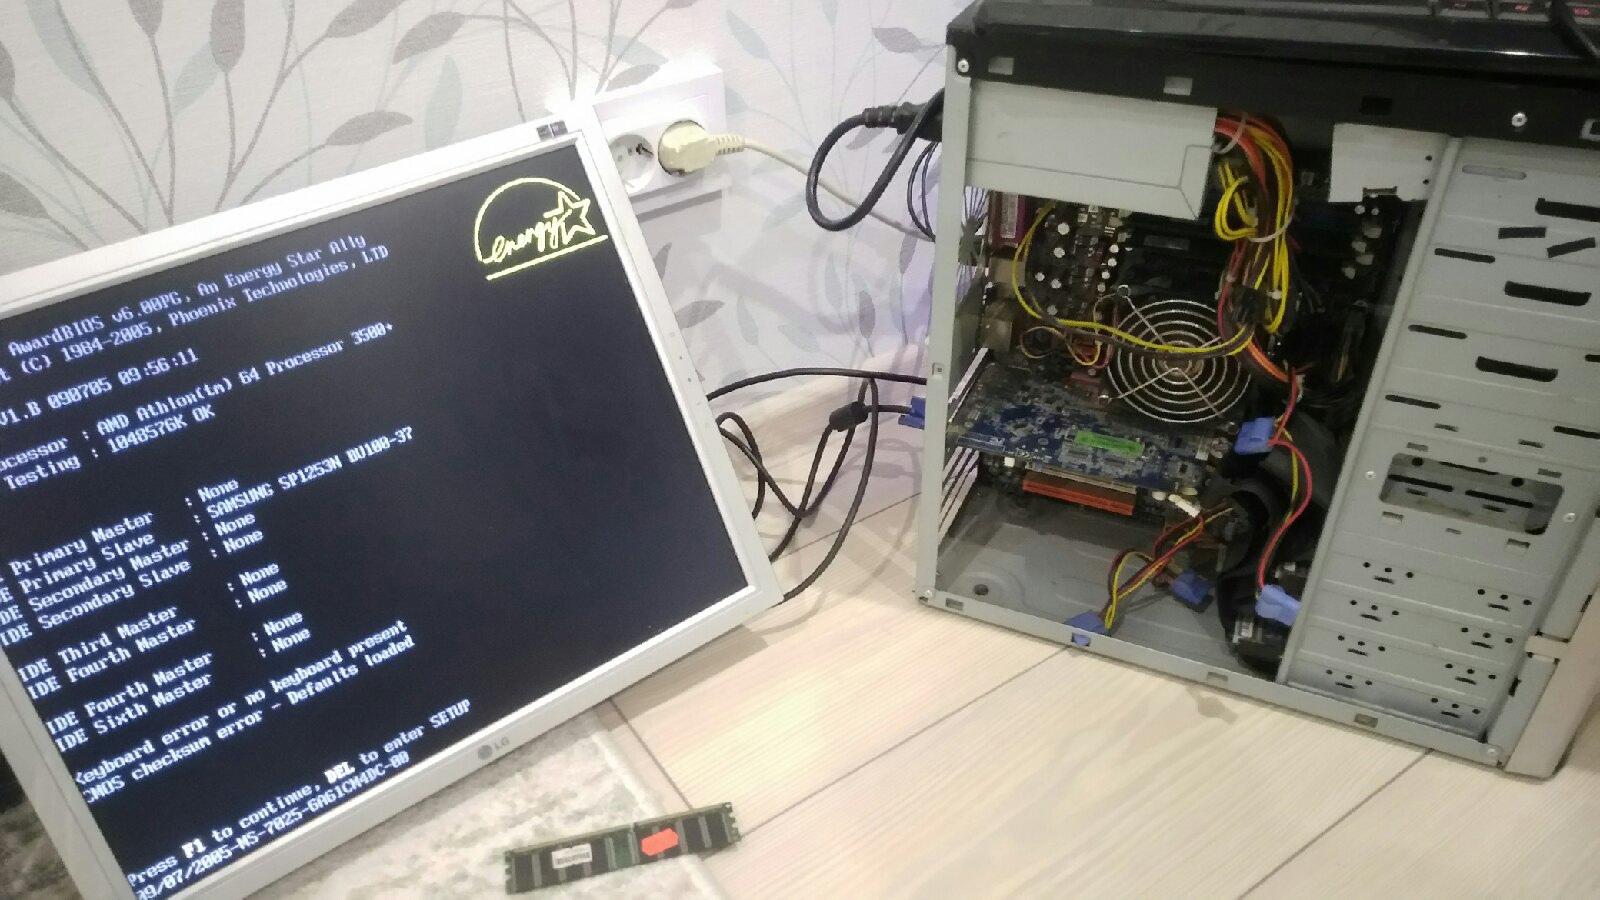  Сисадмин украл из больницы в Нижнем Новгороде компьютеры почти на миллион